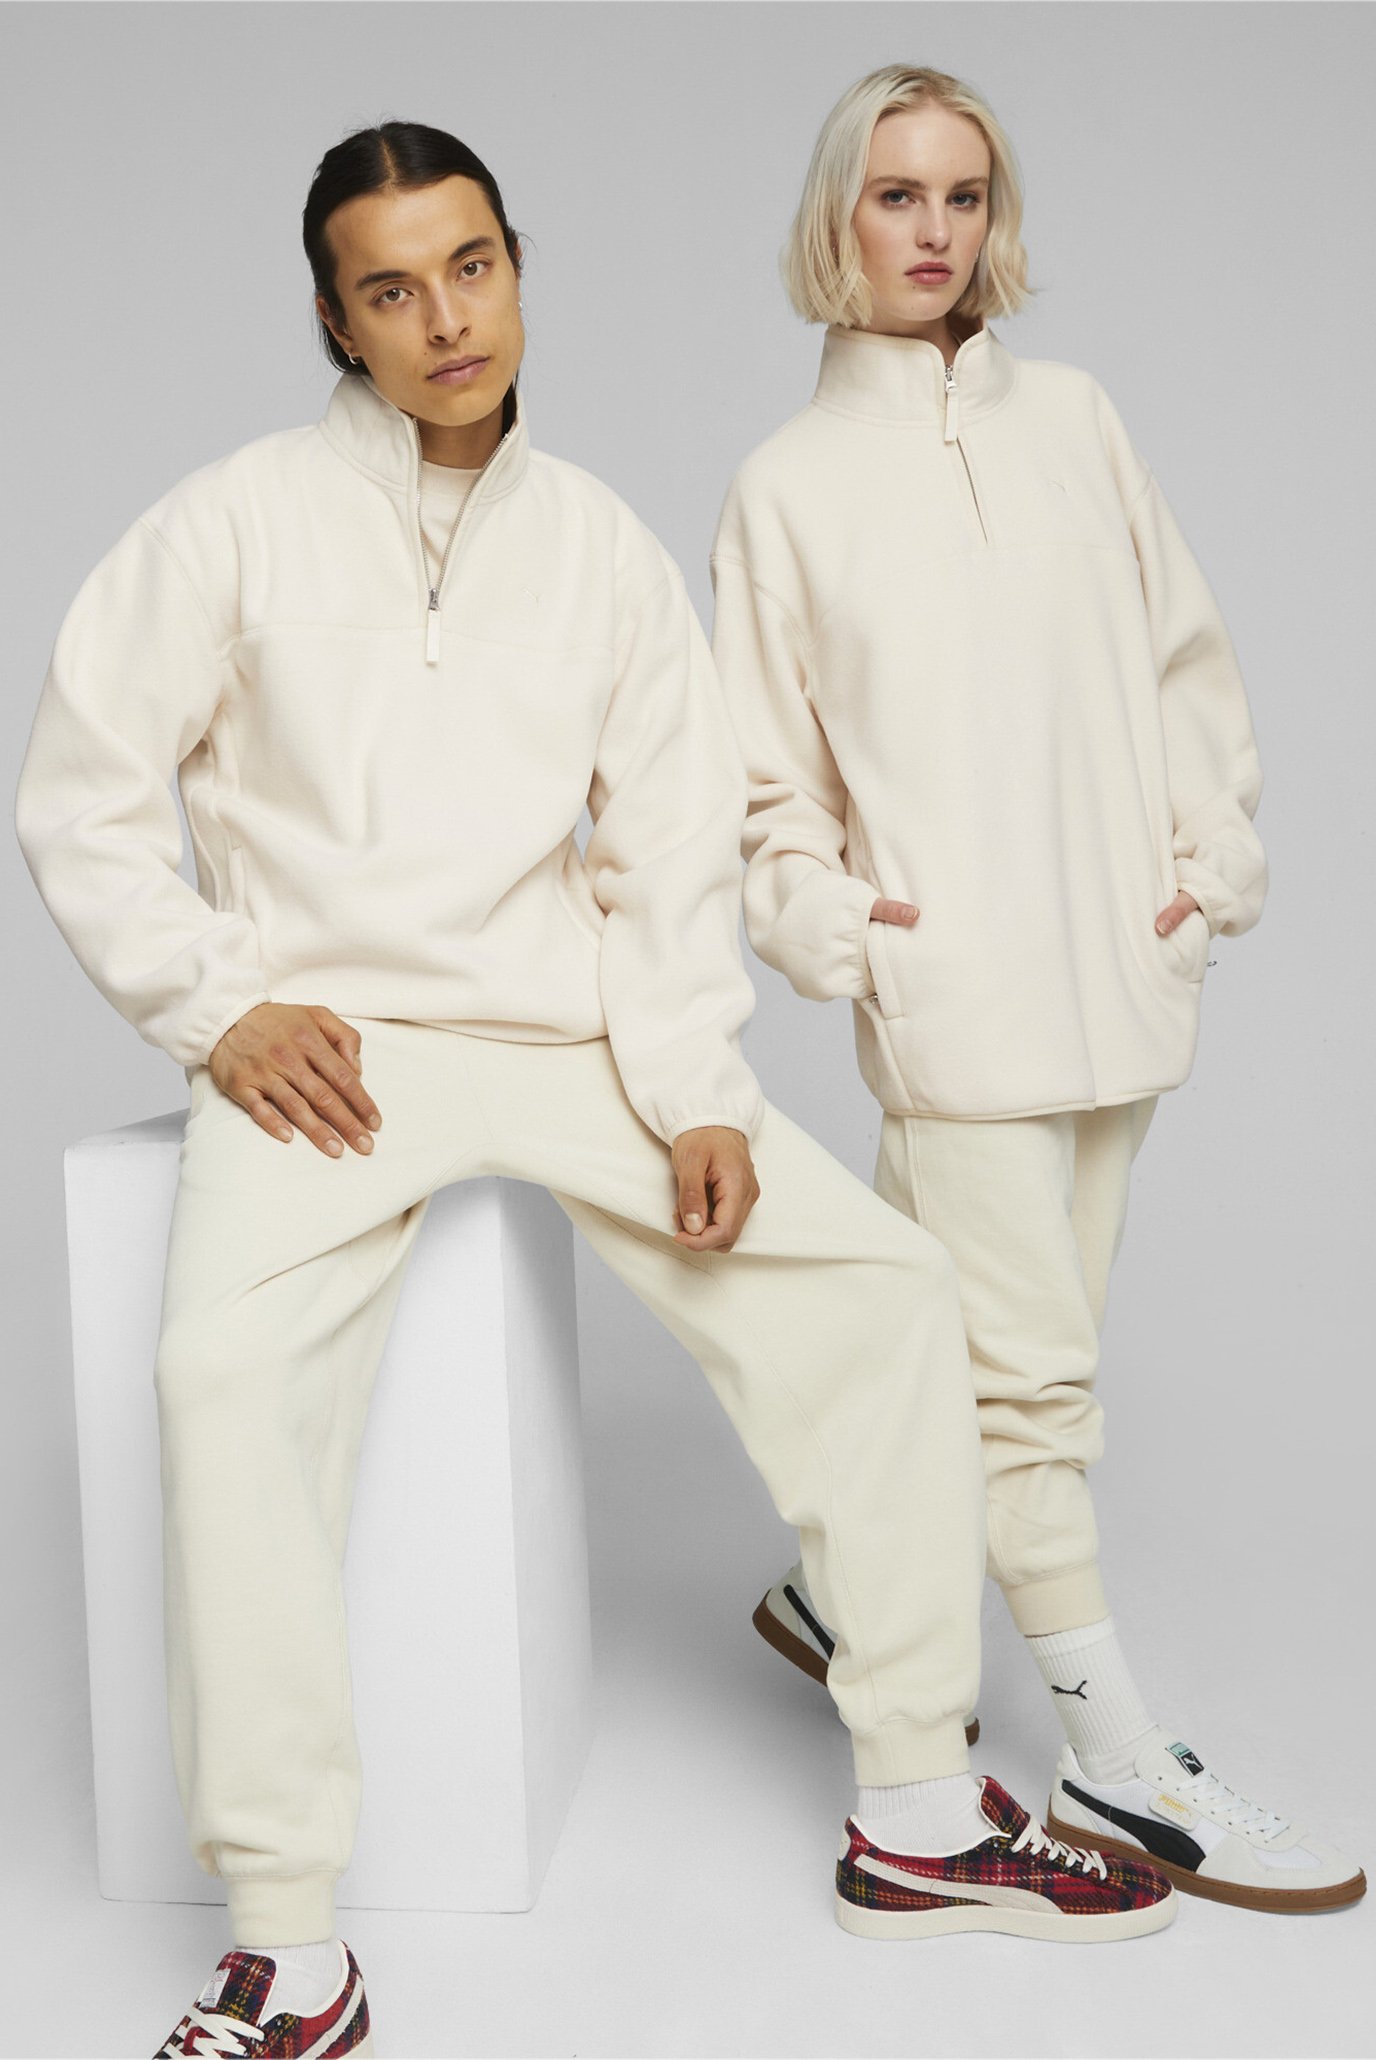 Белая спортивная кофта MMQ Polar Fleece Sweatshirt (унисекс) 1